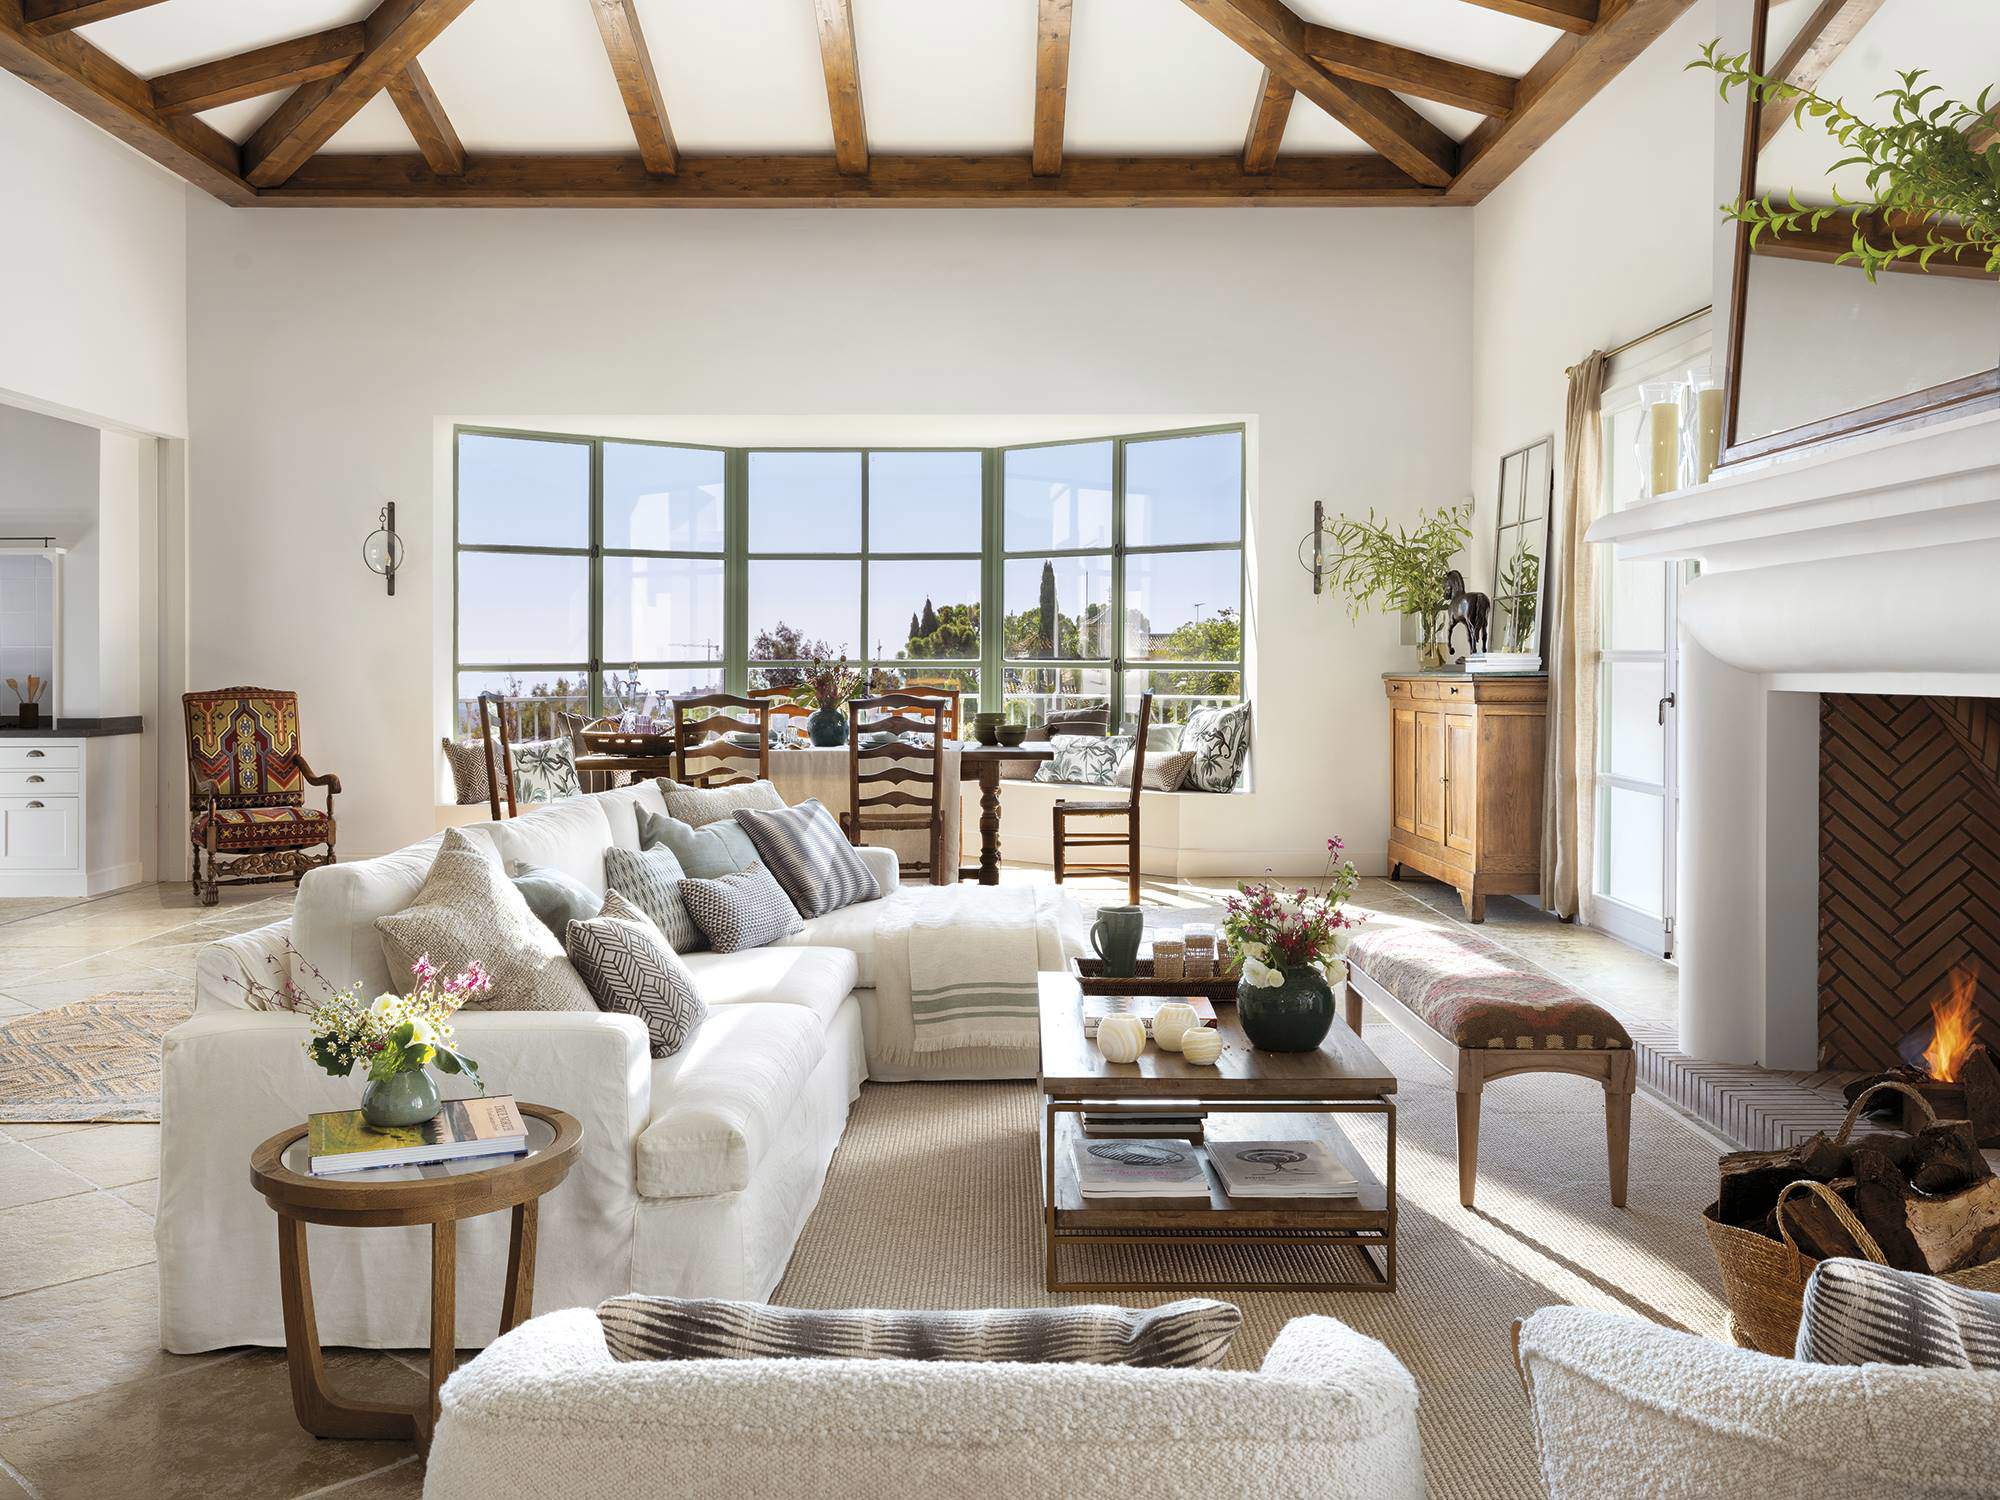 Salón con mobiliario y vigas de madera natural, combinado con blanco y colores naturales.